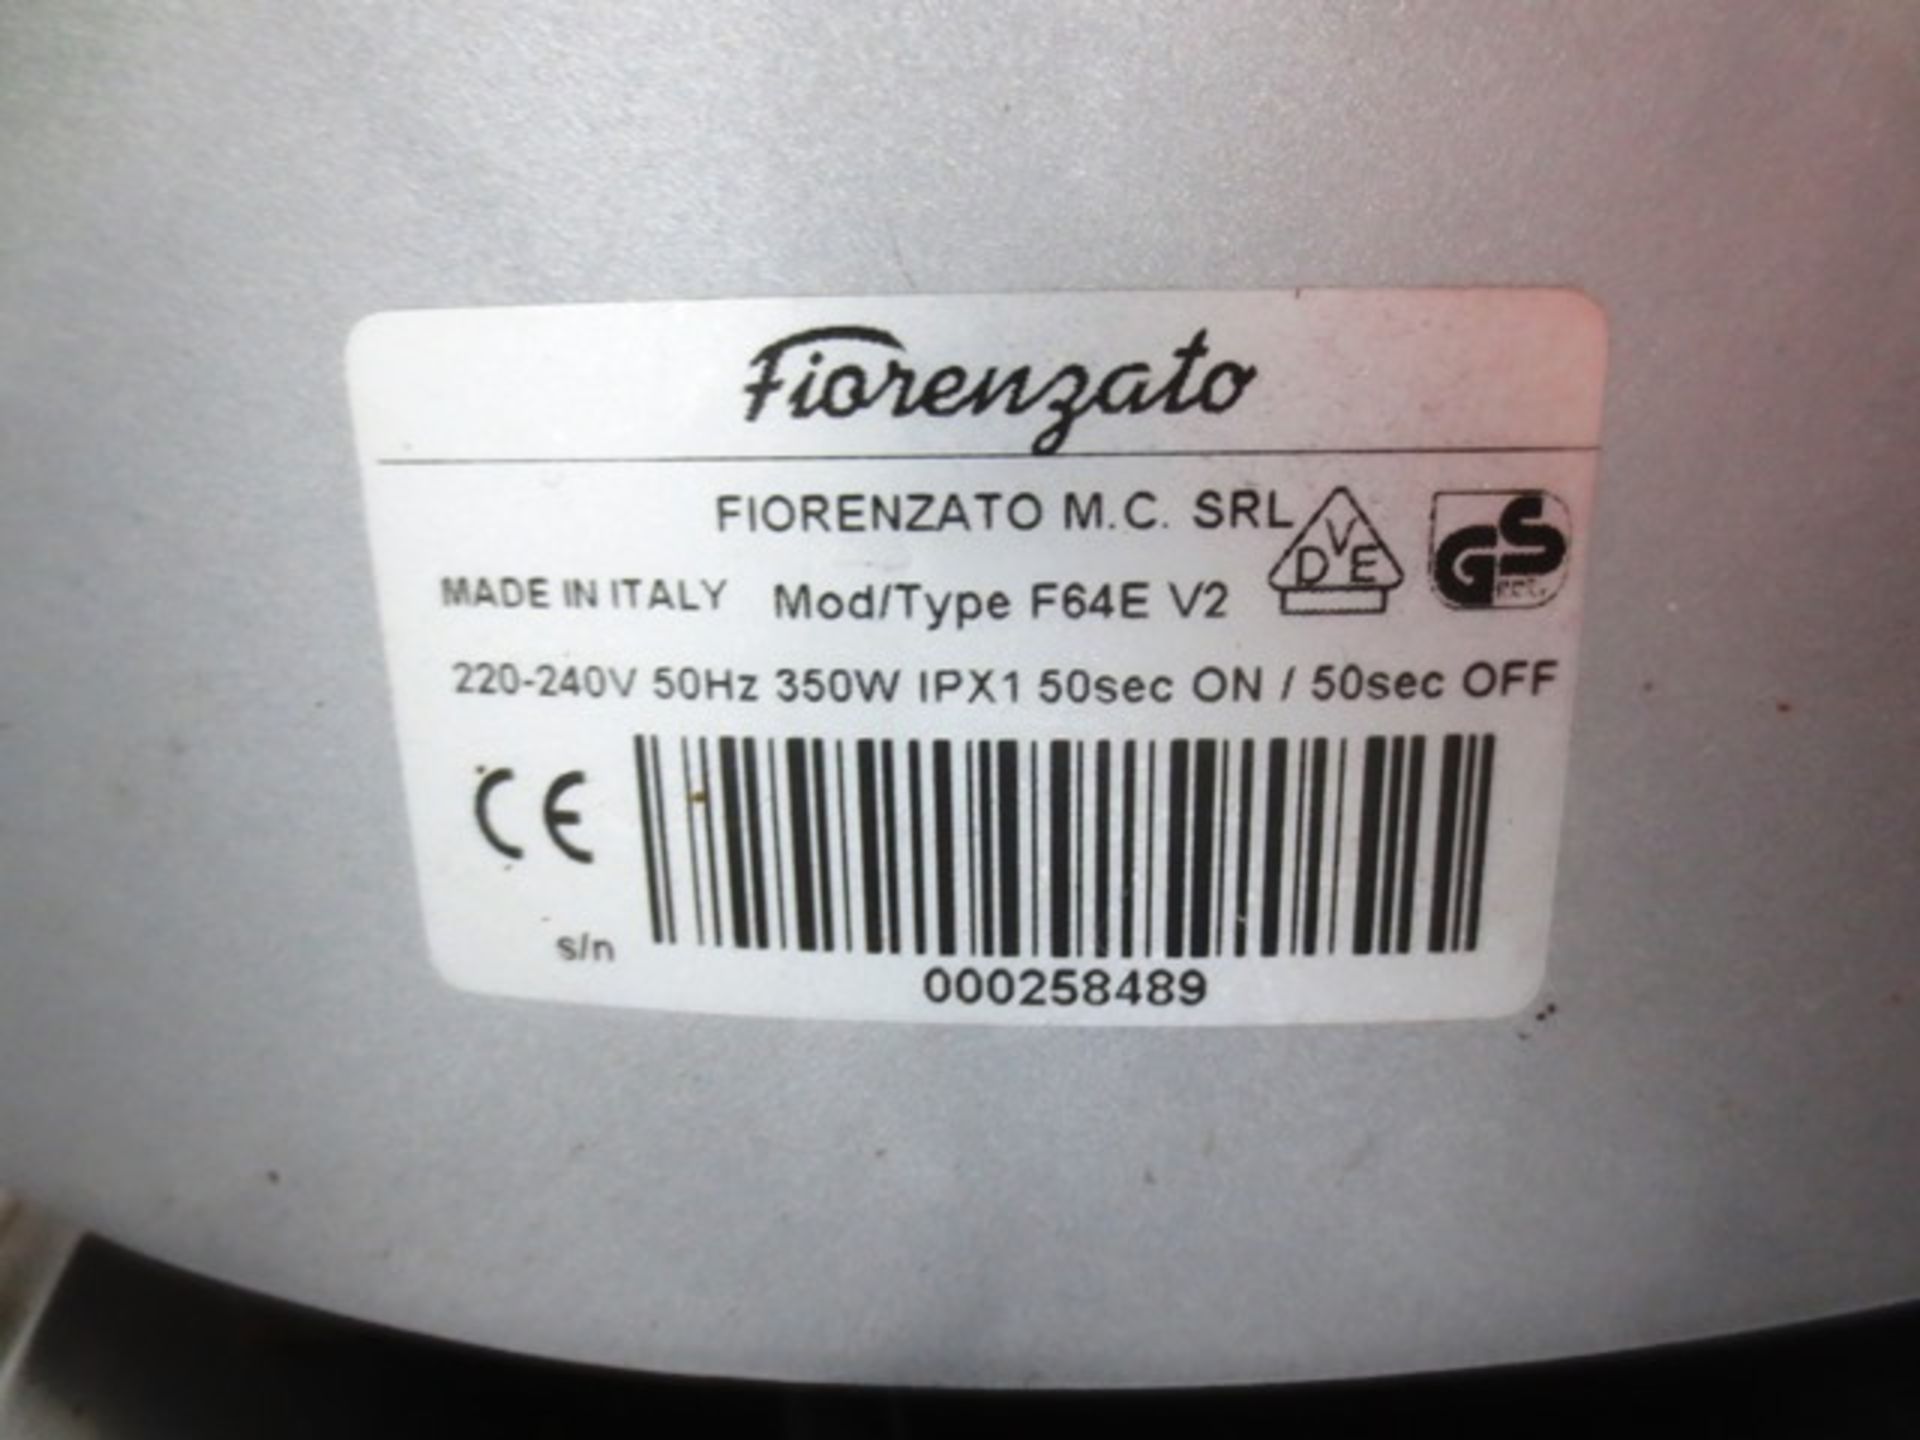 Fiorenzato F64E V2 coffee grinder, serial no: 000258489 - Image 2 of 2